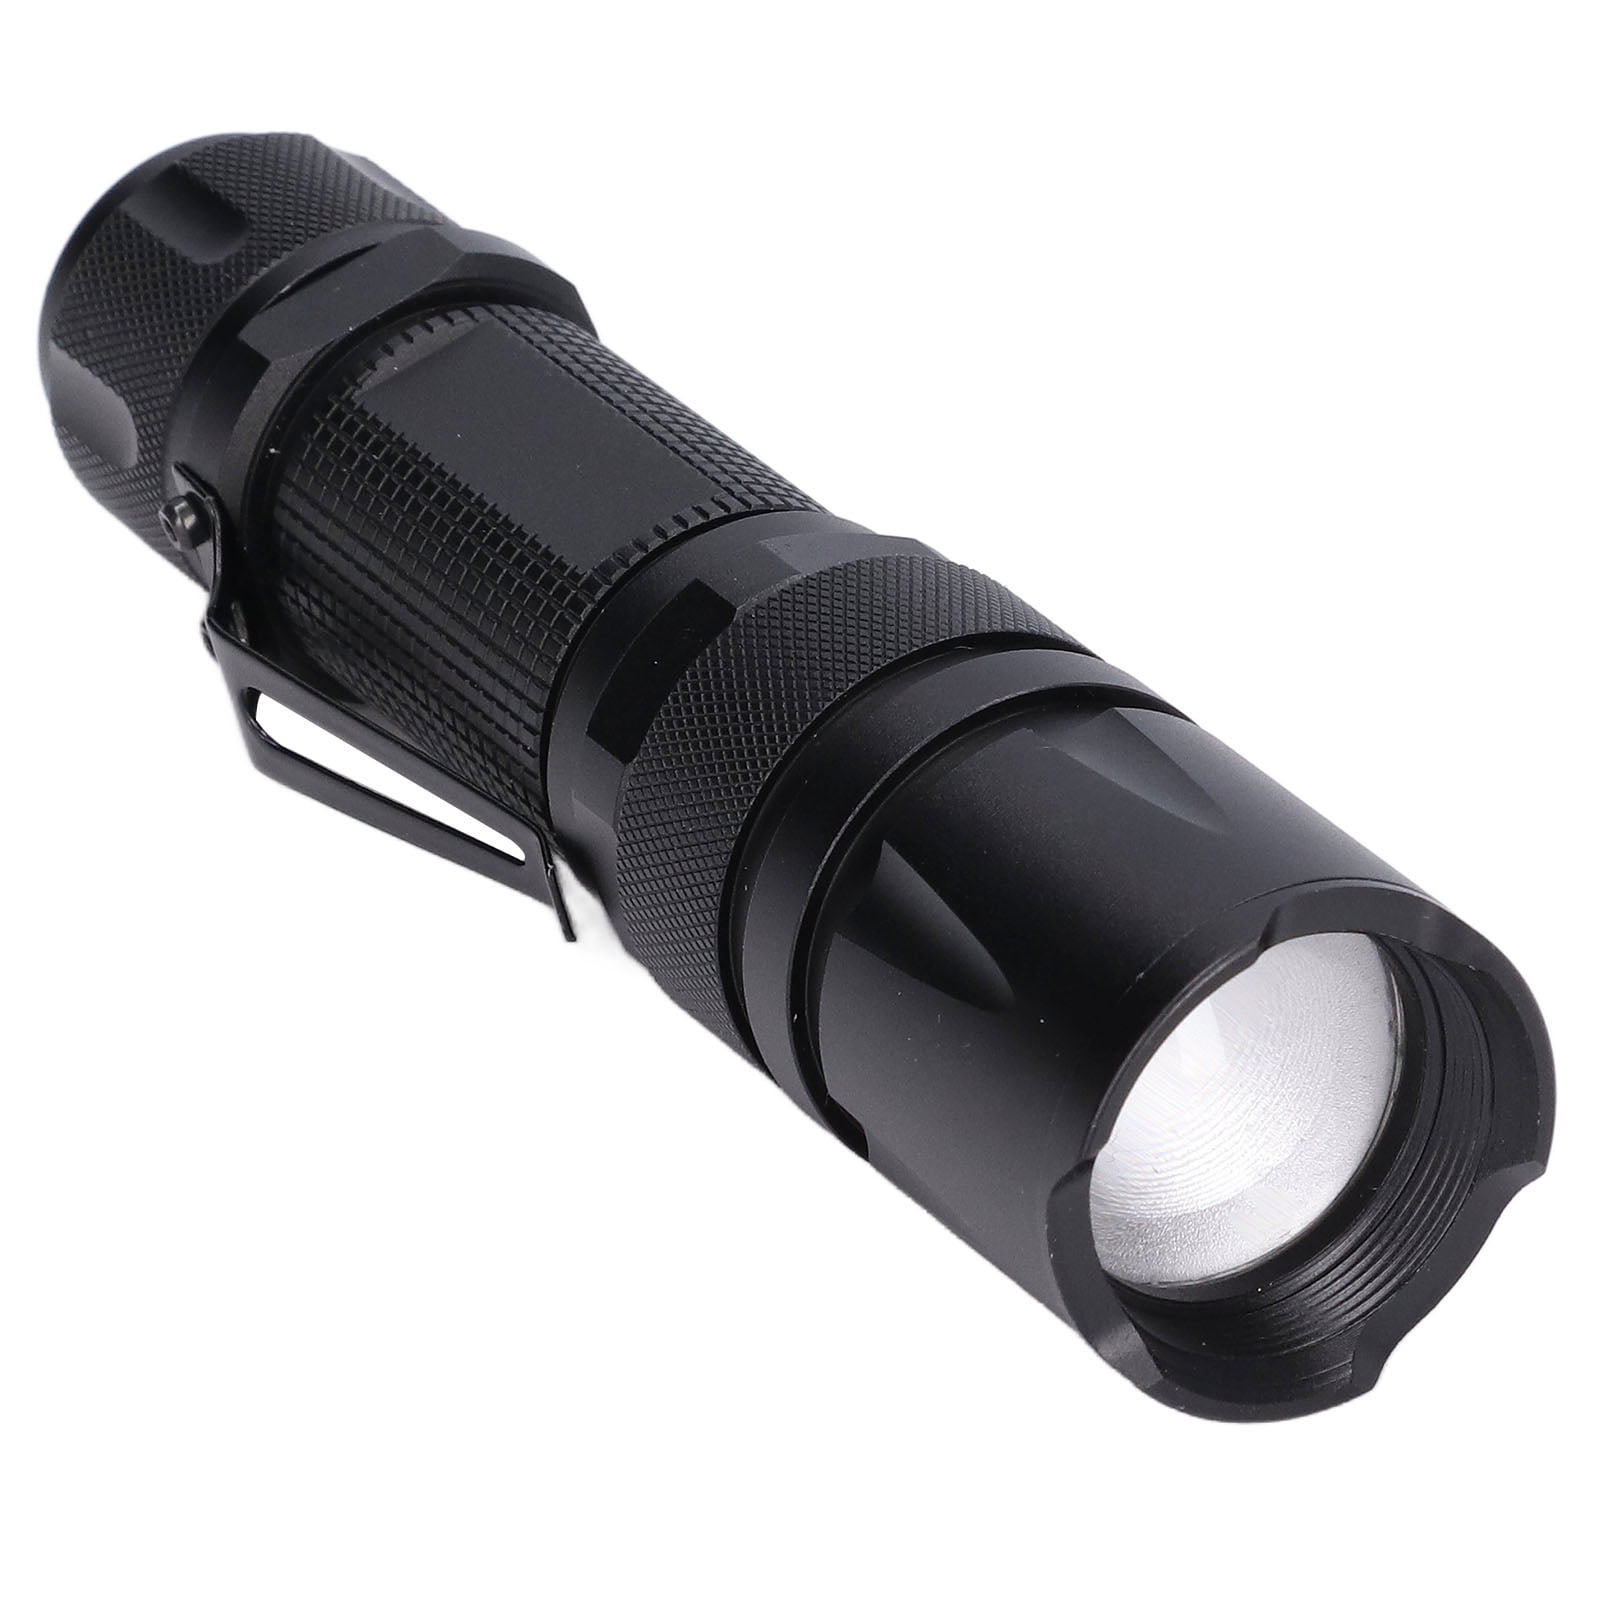 Black for sale online Streamlight 88040 ProTac HL 750 Lumen Professional Tactical Flashlight 